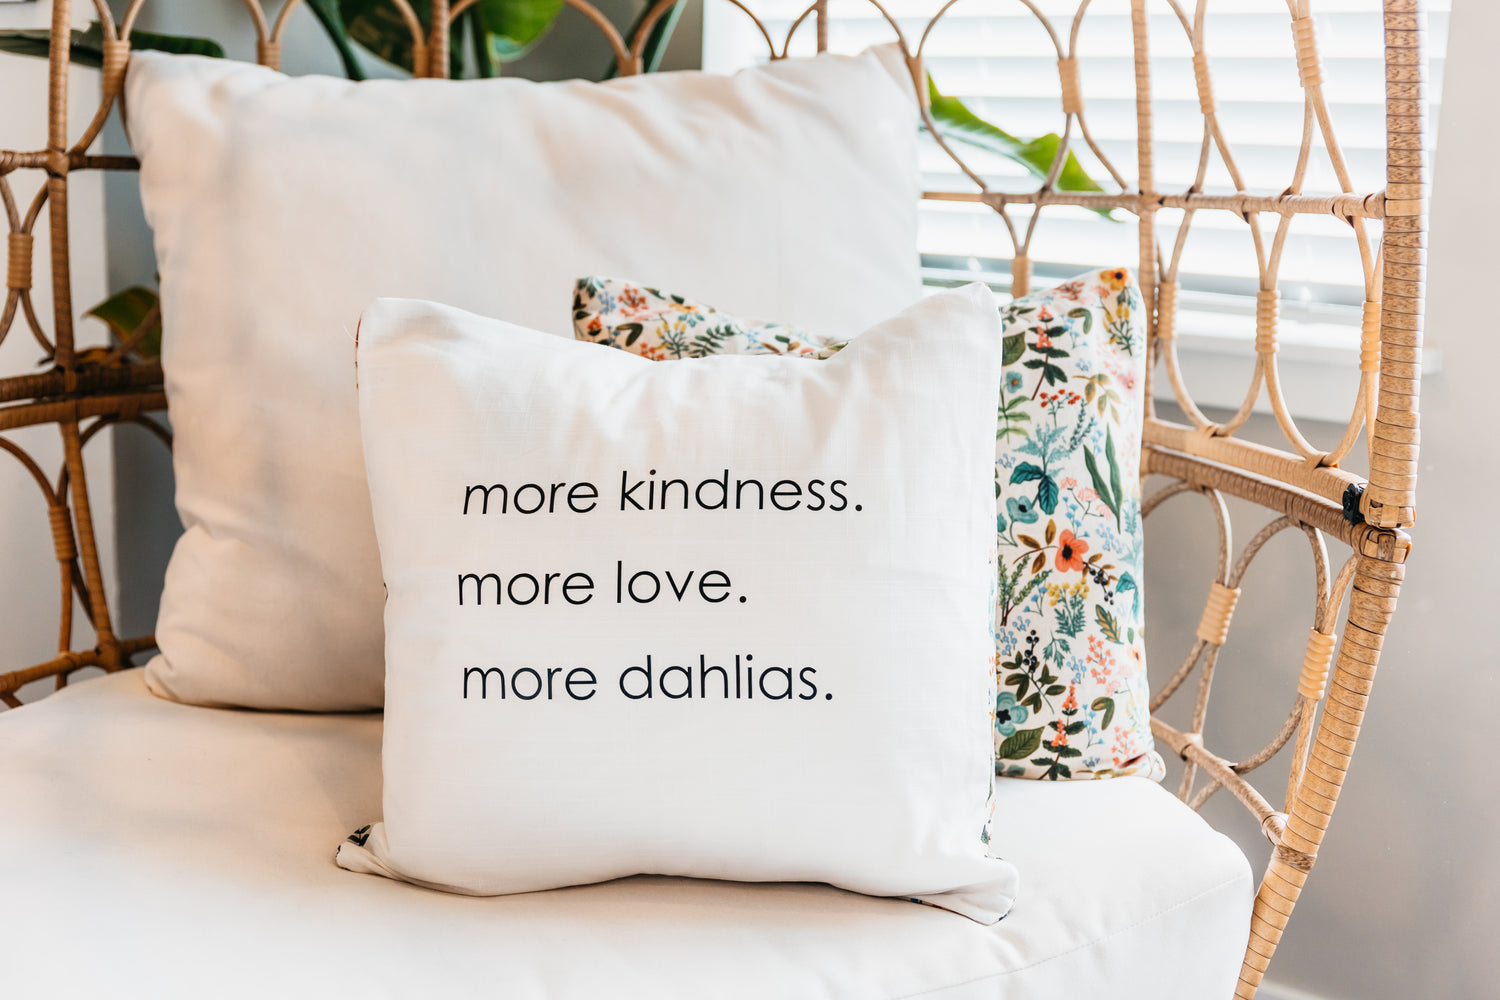 Pillow: more kindness, more love, more dahlias.